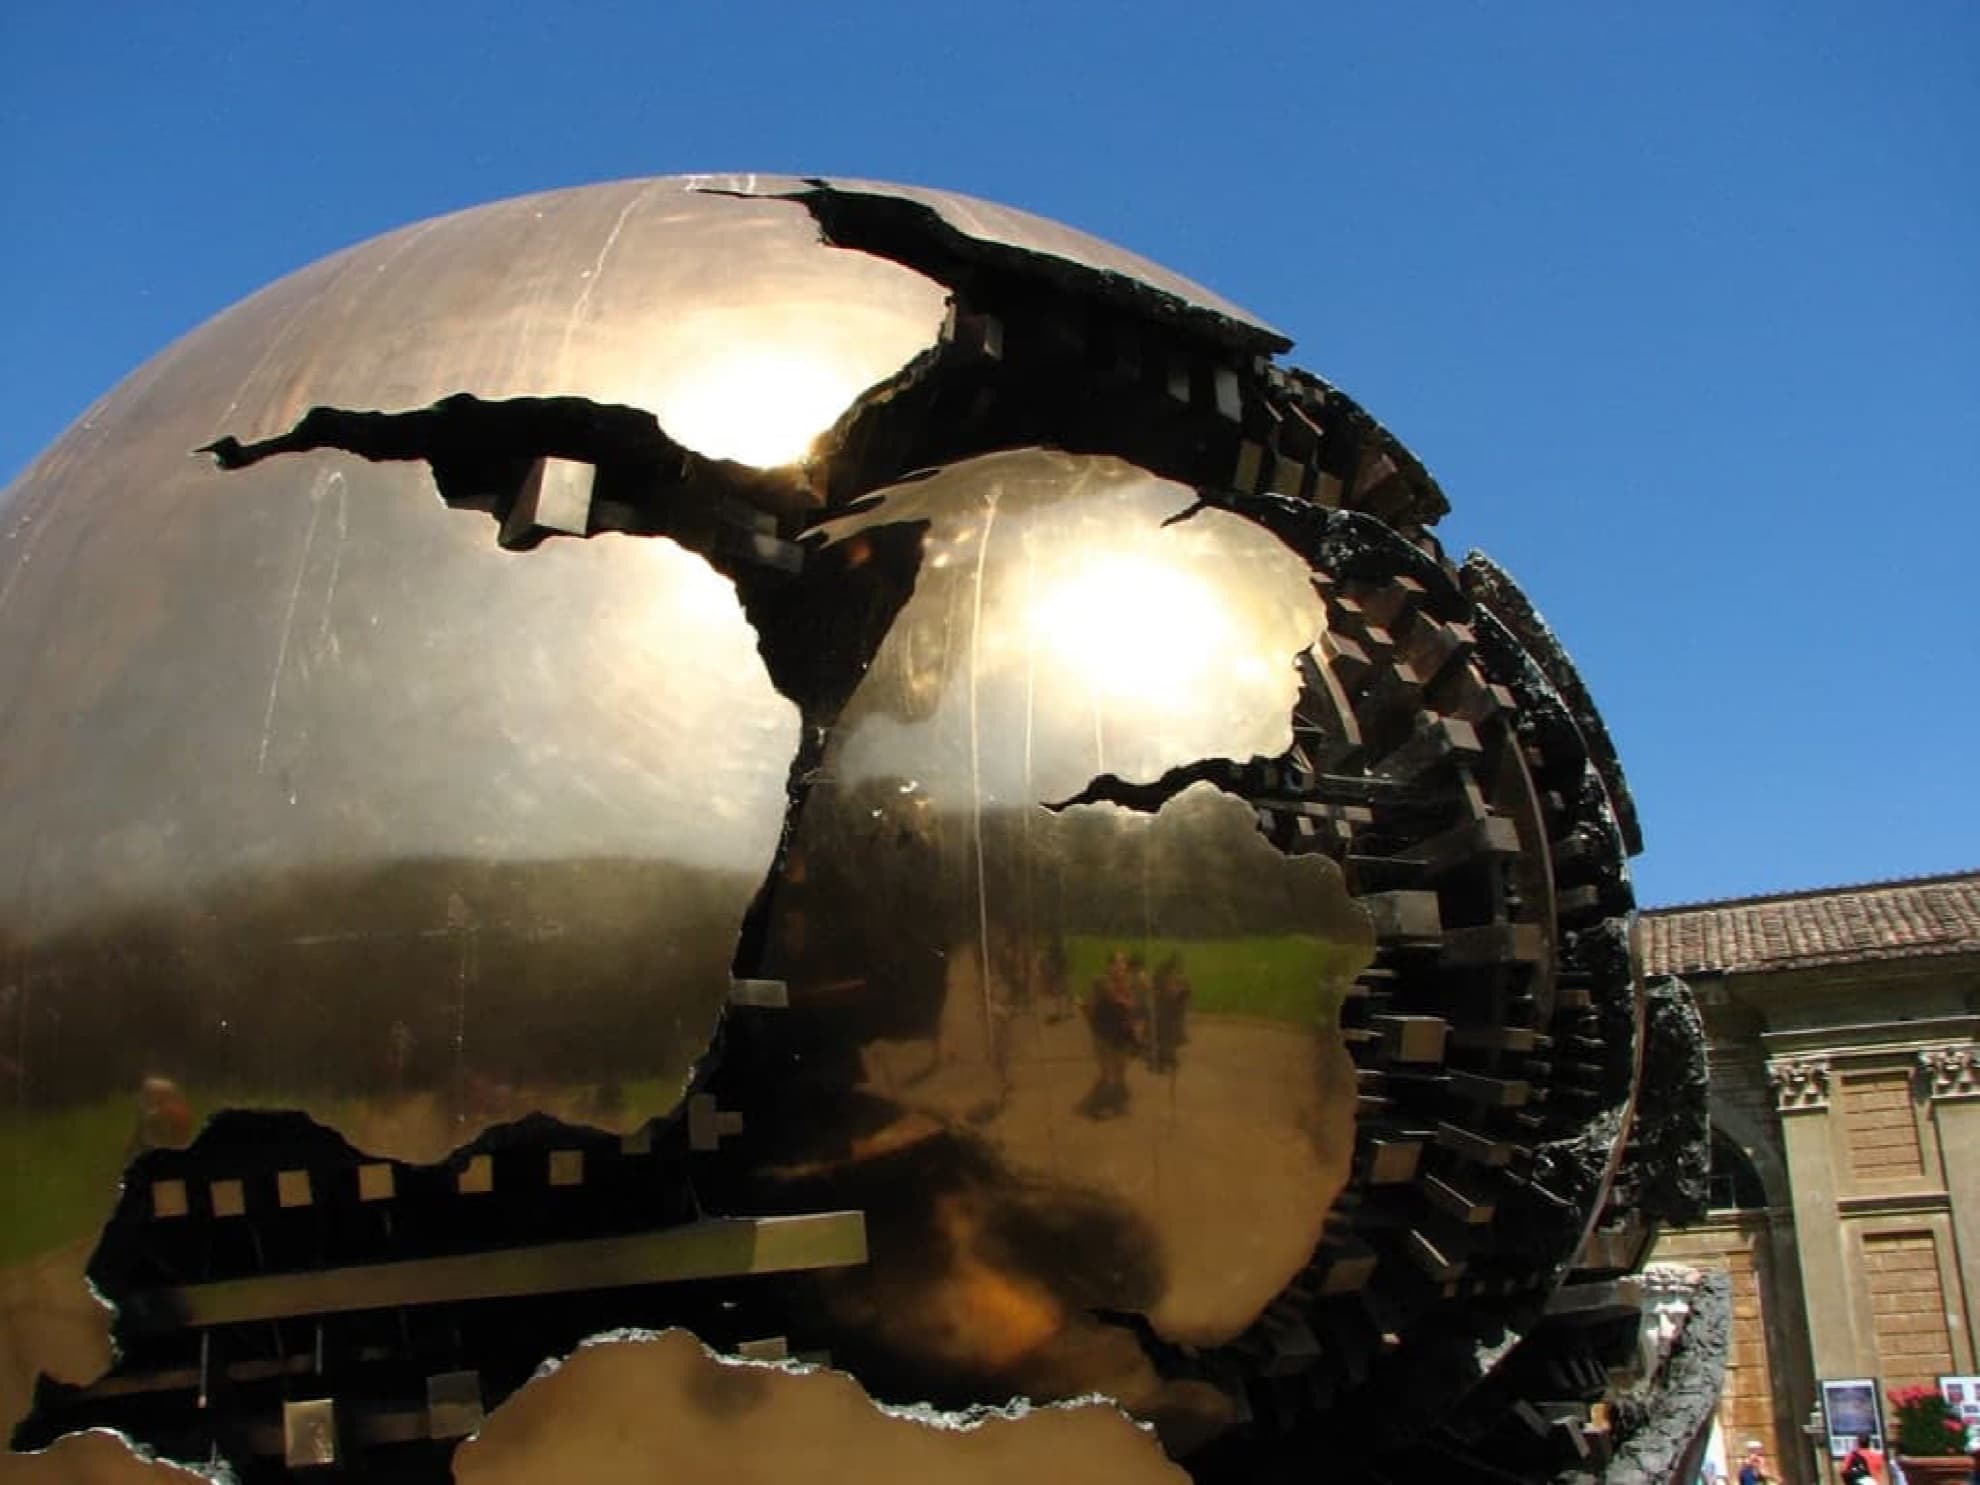 Escultura Esfera dentro da Esfera ou Sfera con Sfera